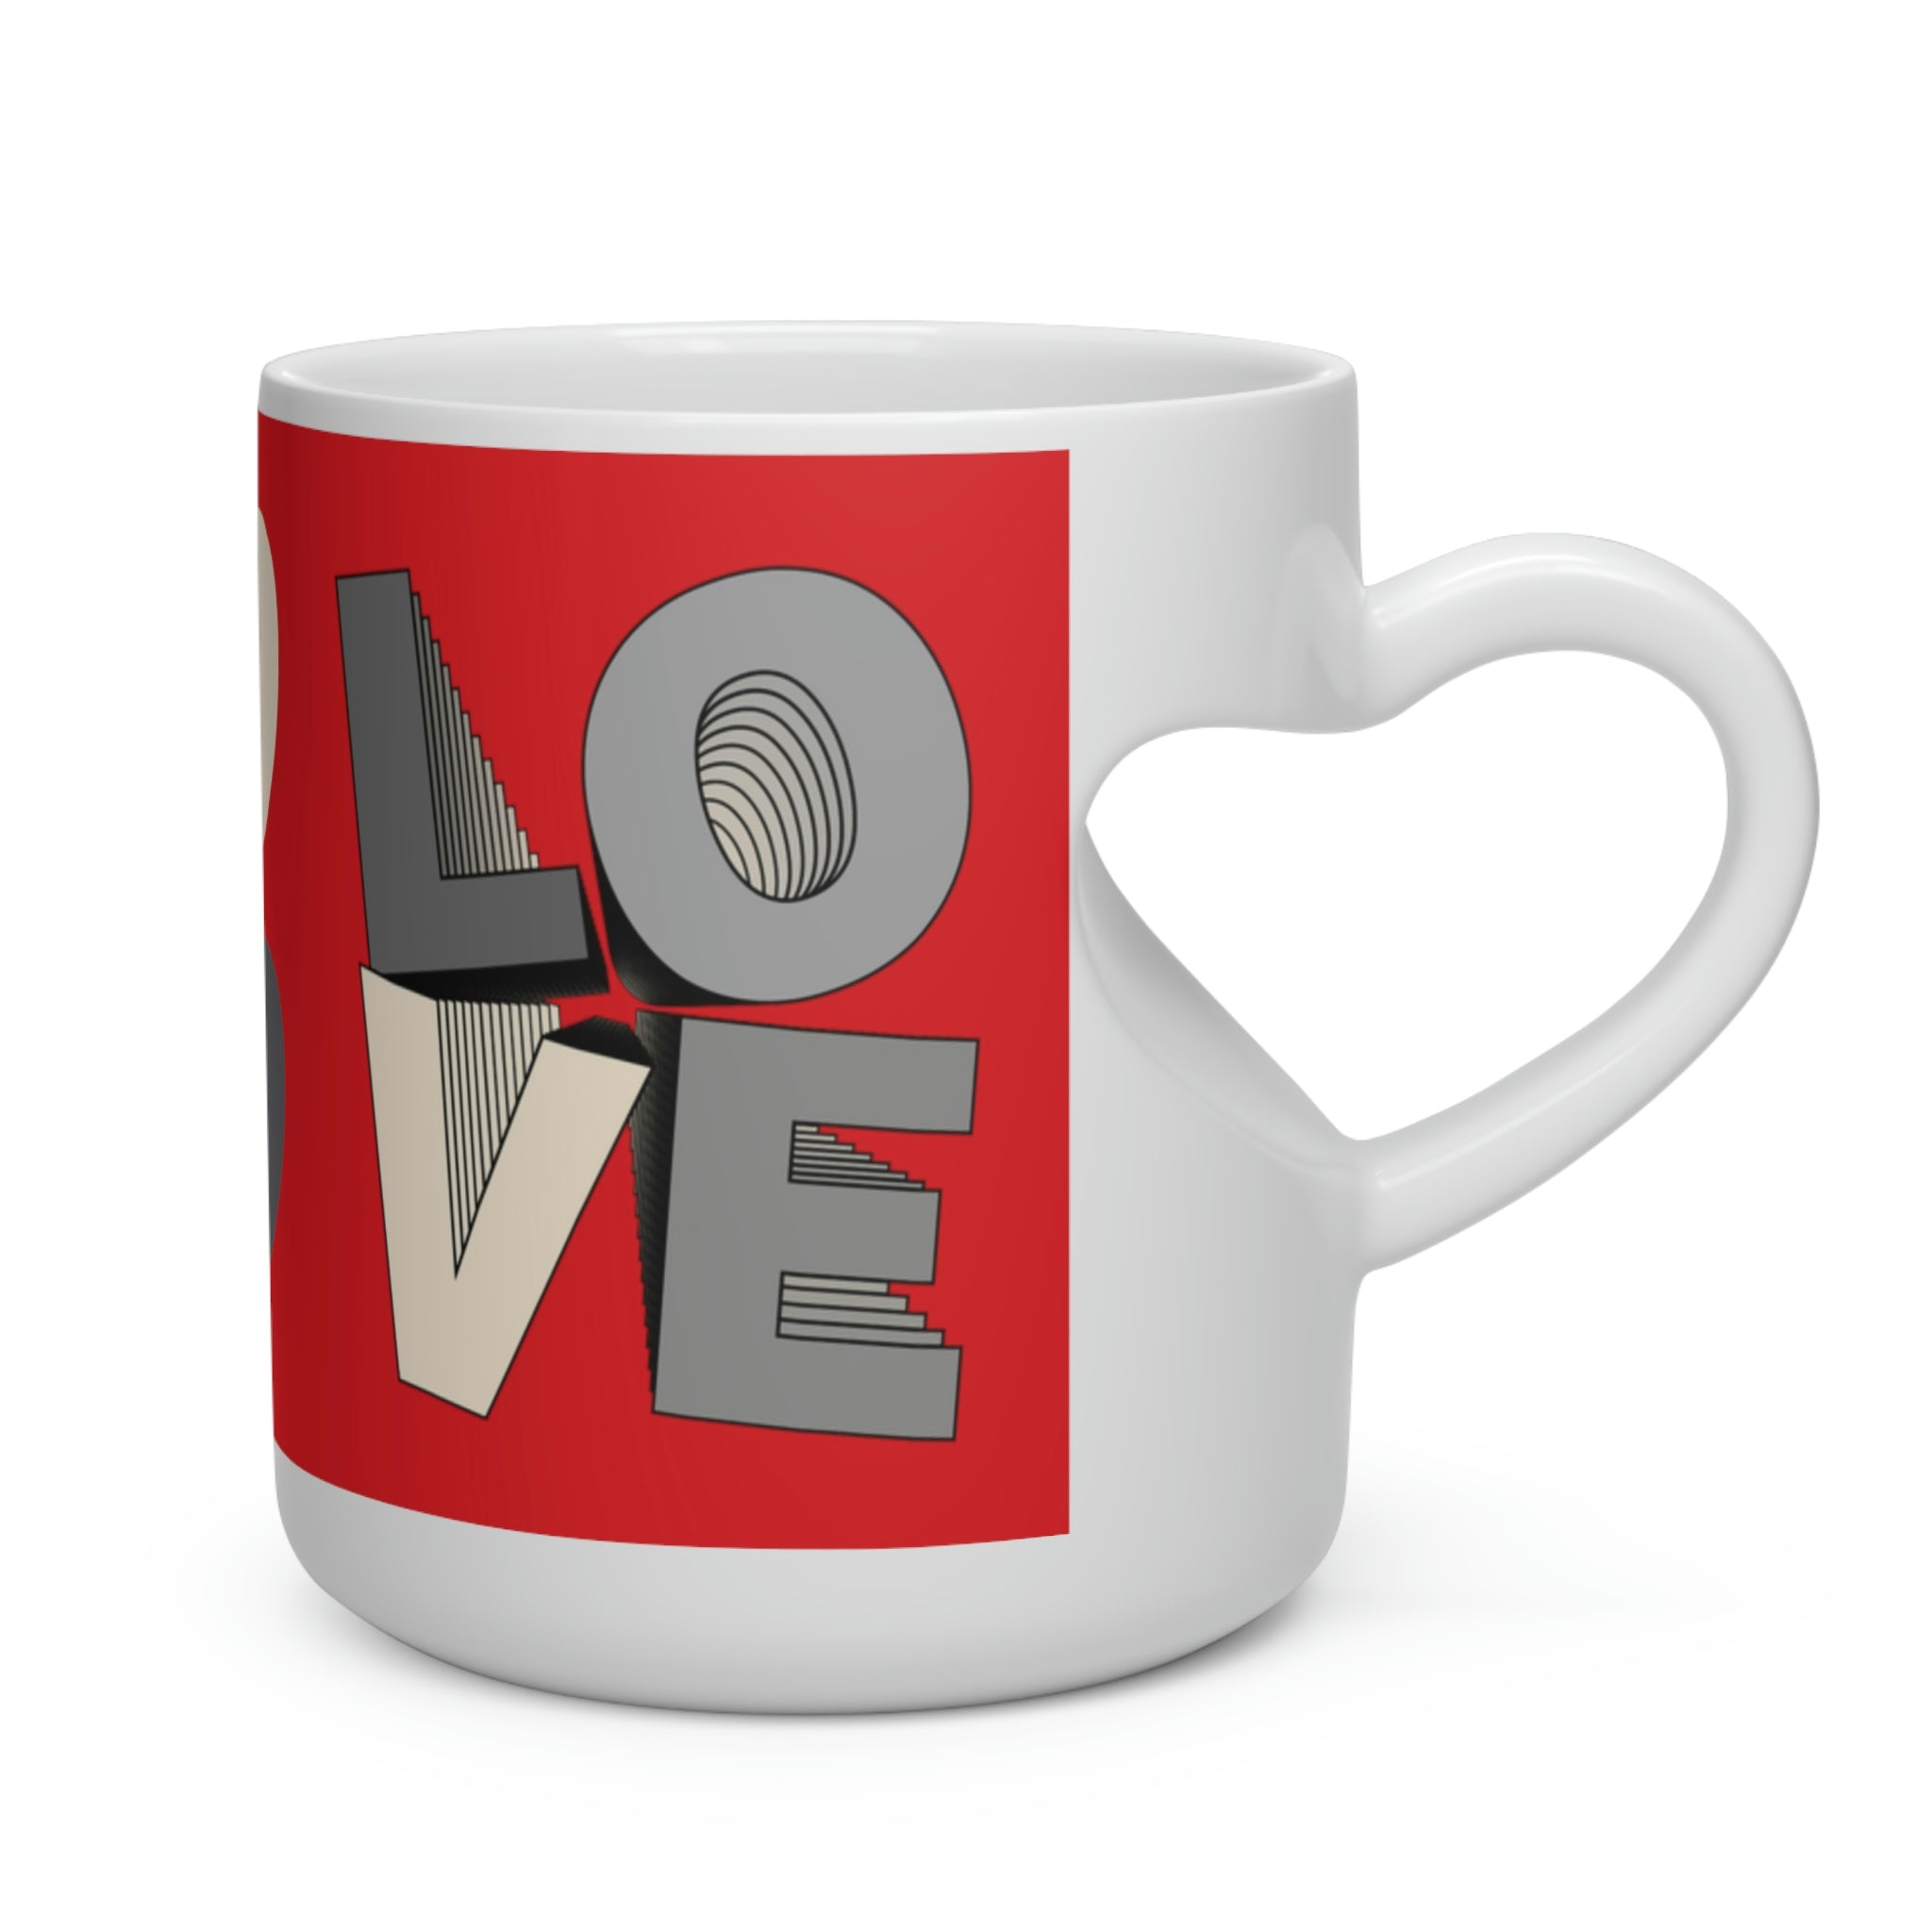 Heart Shape Mug Layer Love 2 grey/red